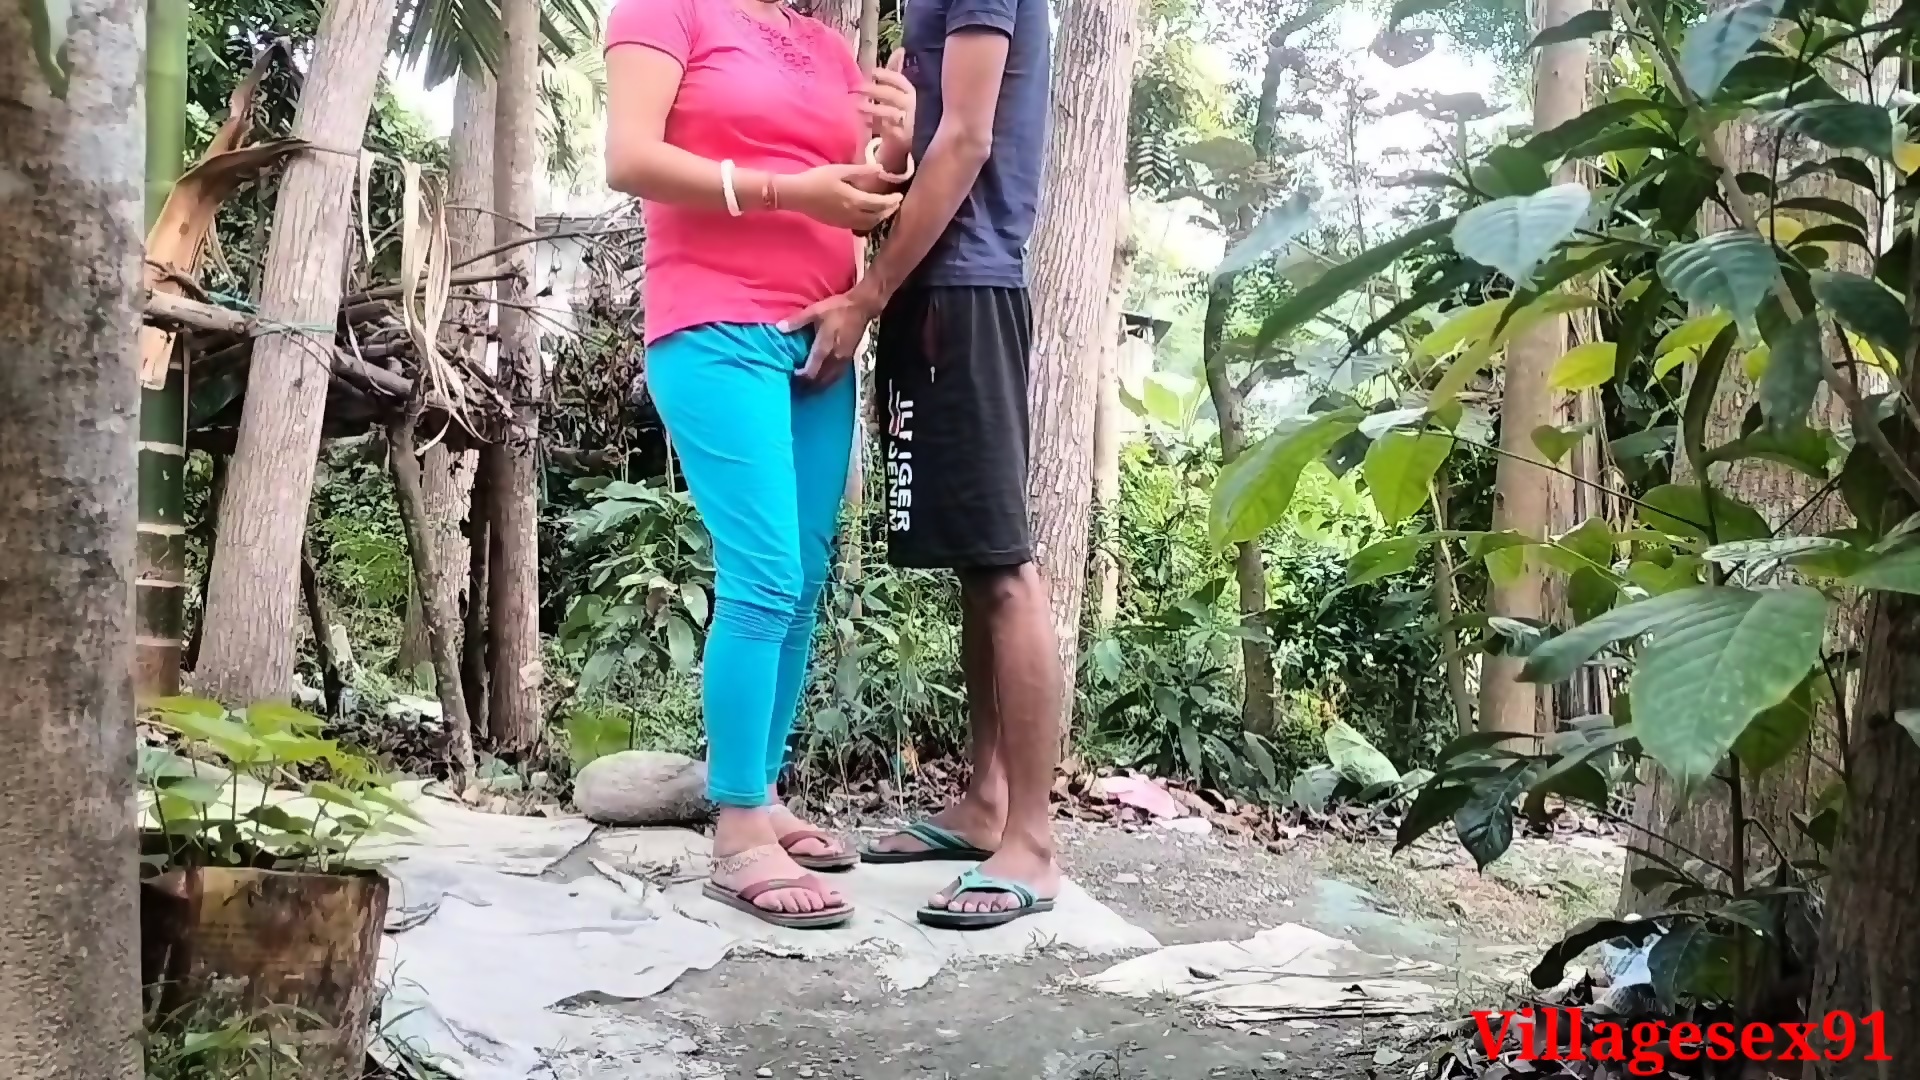 Village Girlfriend Sex With Her Boyfriend In Red T Shar image